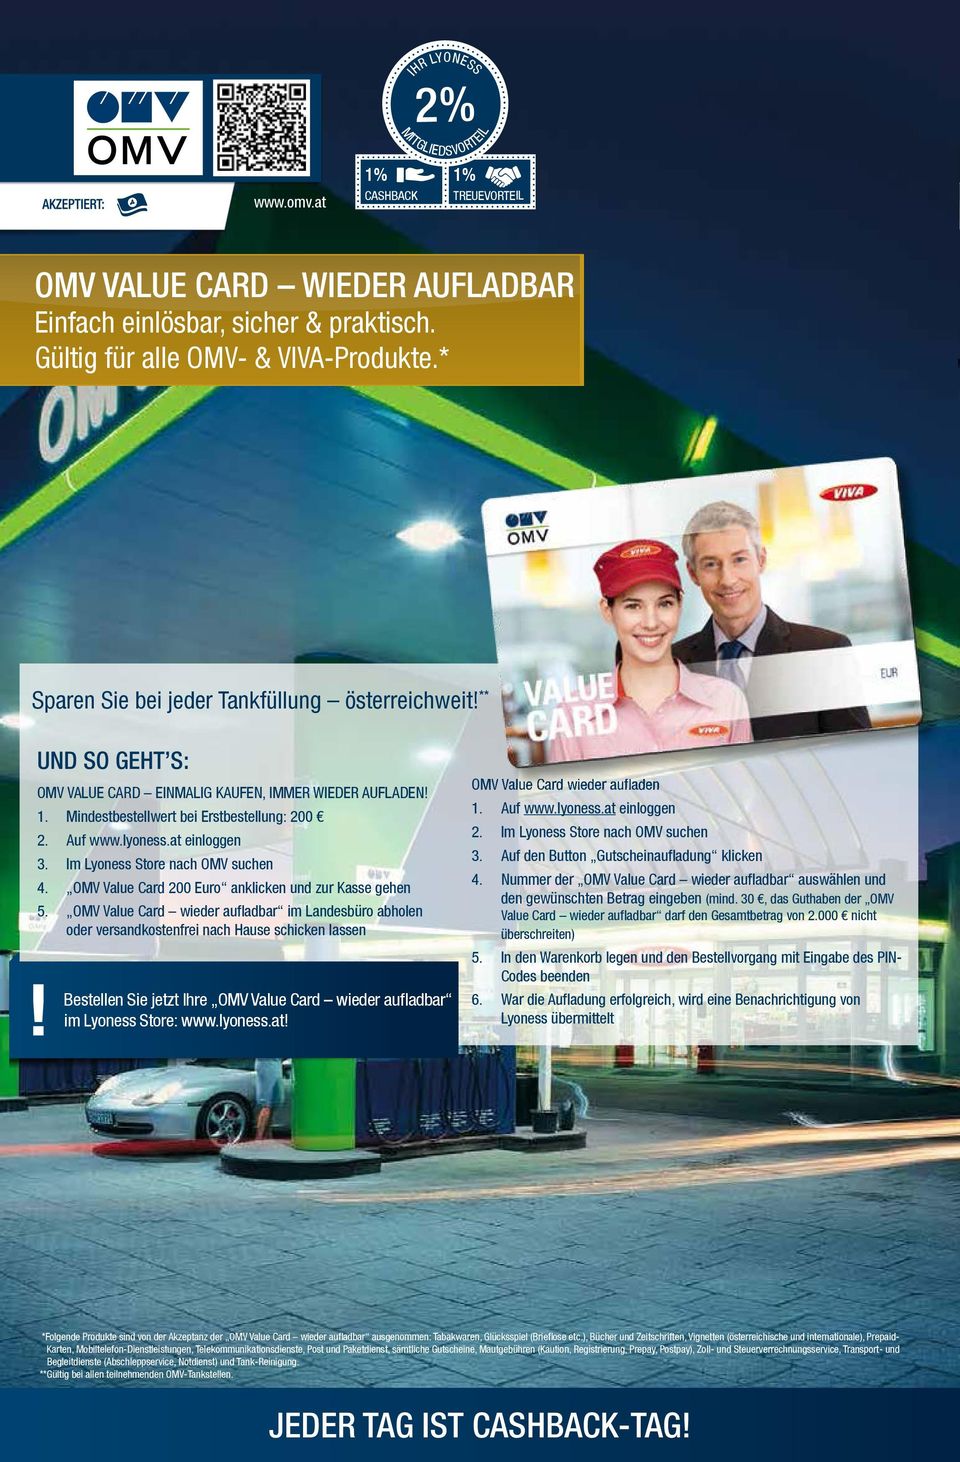 OMV Value Card 200 Euro anklicken und zur Kasse gehen 5.